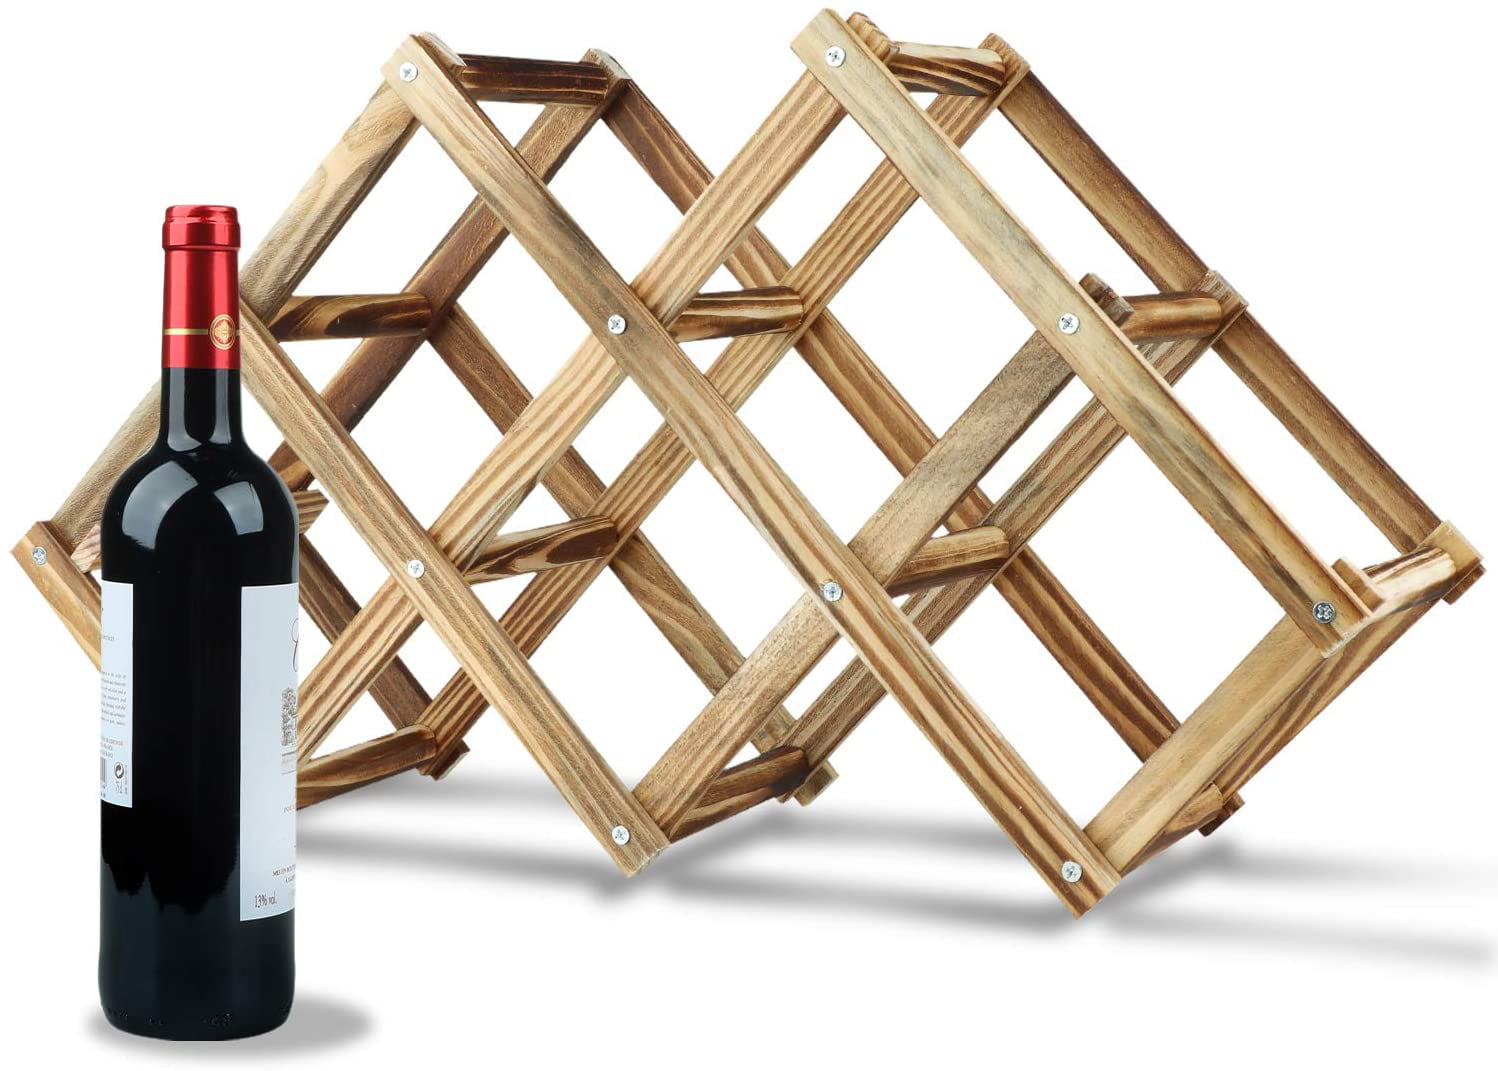 Royalhouse Bamboo Wine Rack–Wooden Wine Storage Set Holds 2 Bottles And 4 Glas 